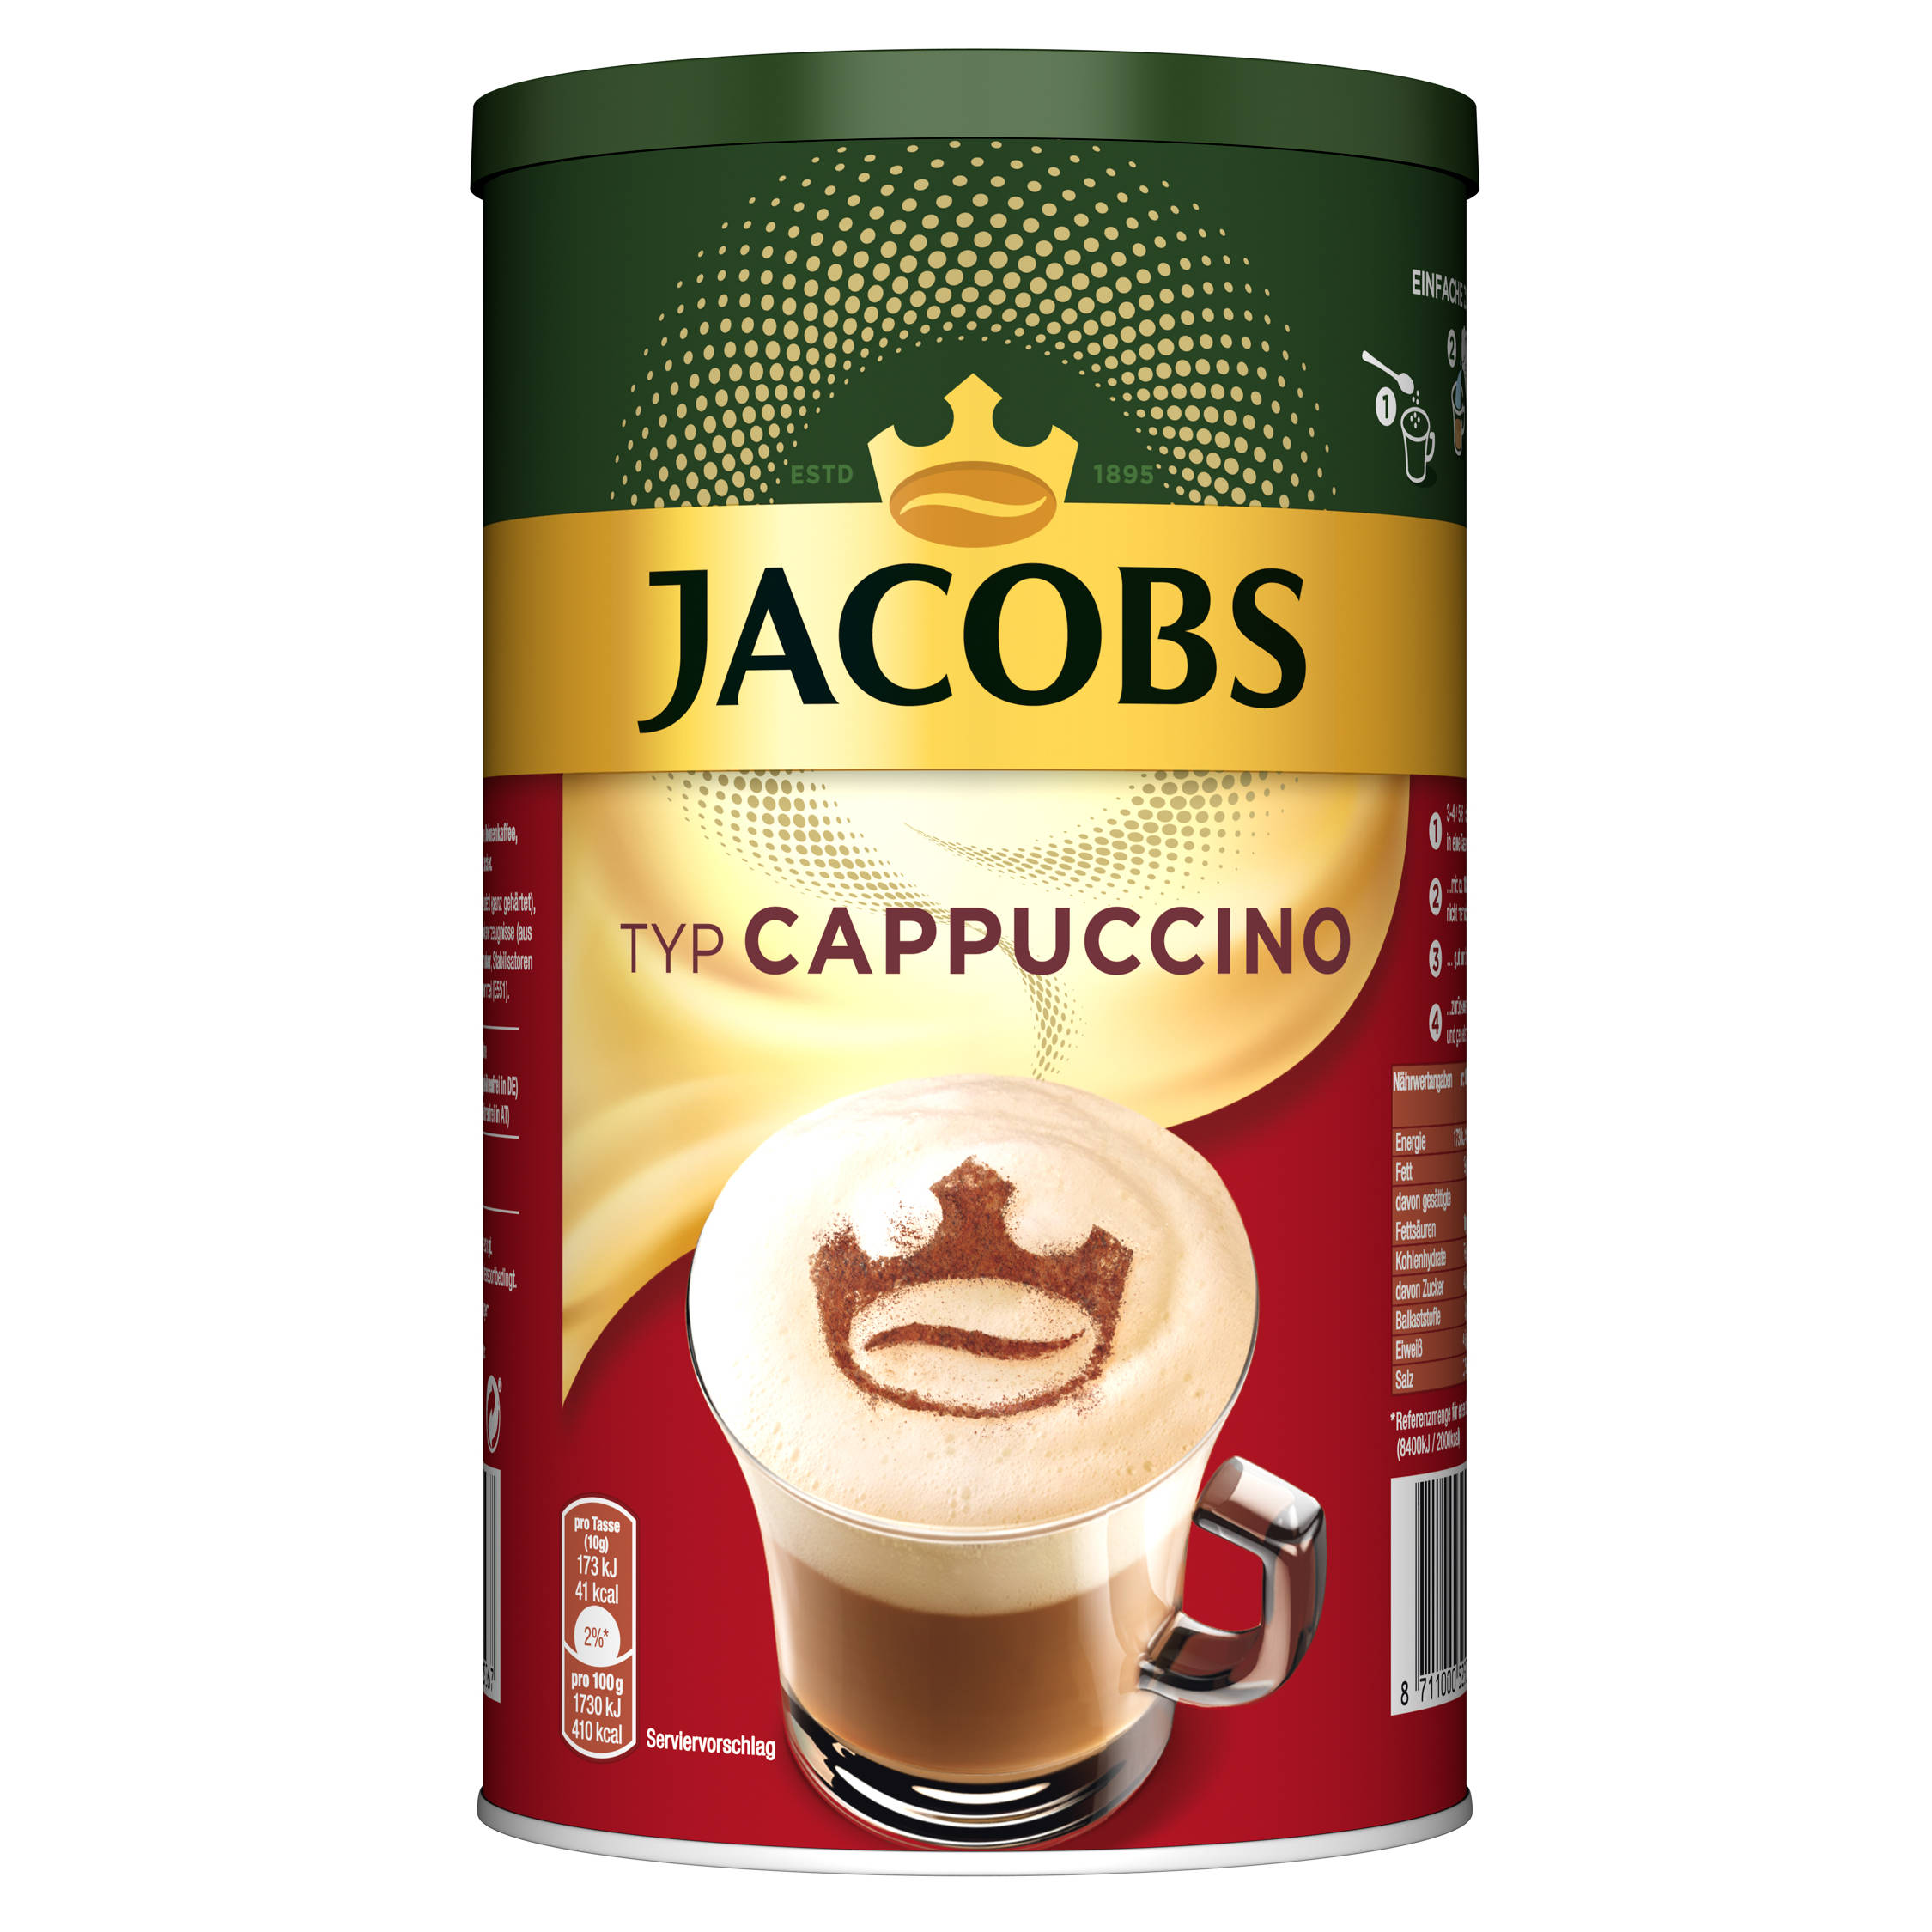 JACOBS Typ Cappuccino 6 x Wasser heißem Instantkaffee Dosen auflösen) 400 g (In